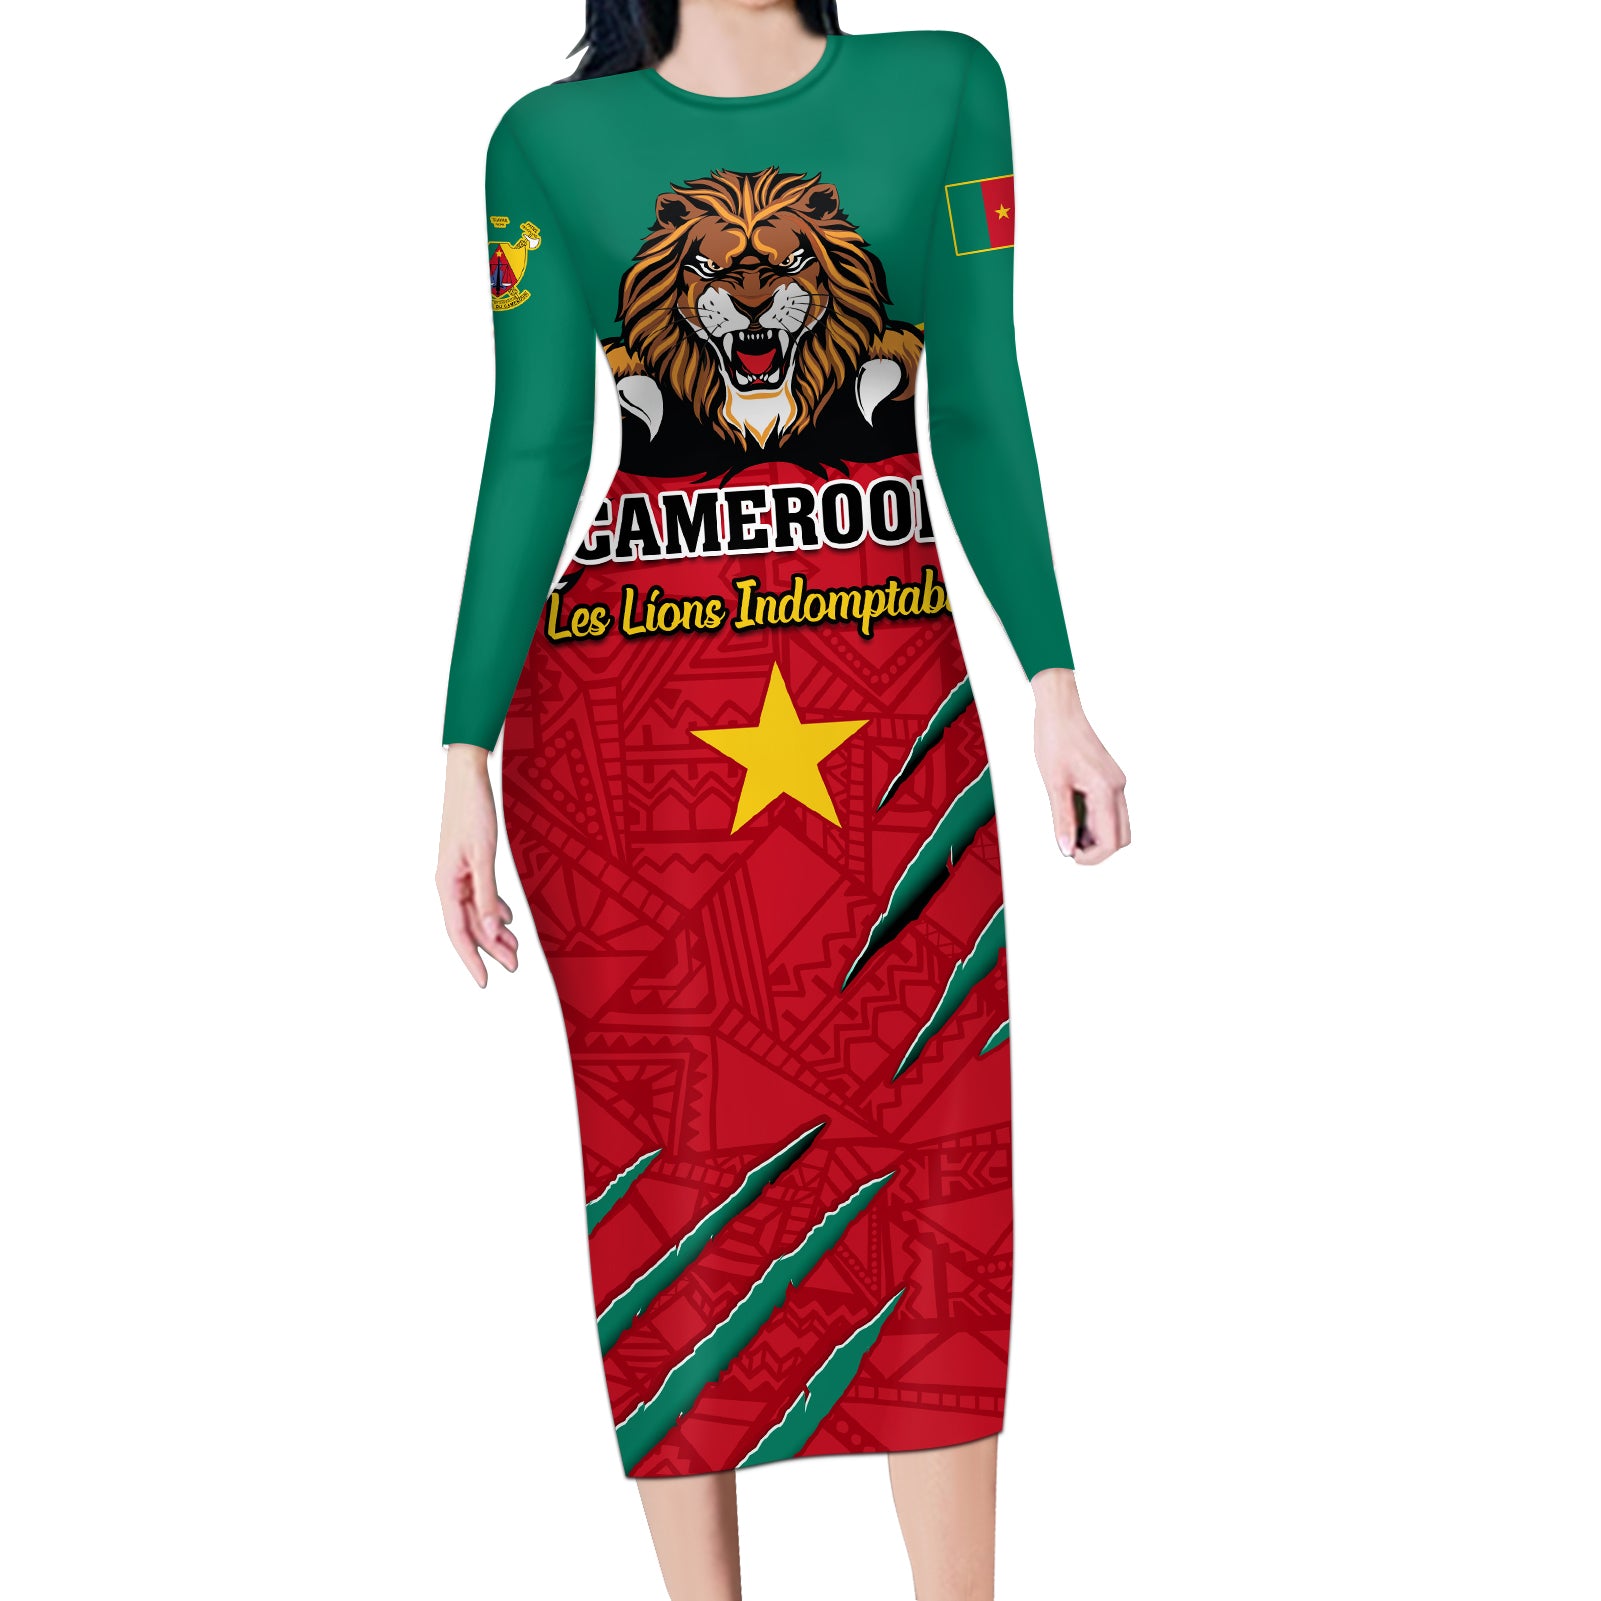 Cameroon Football Long Sleeve Bodycon Dress Go Les Lions Indomptables